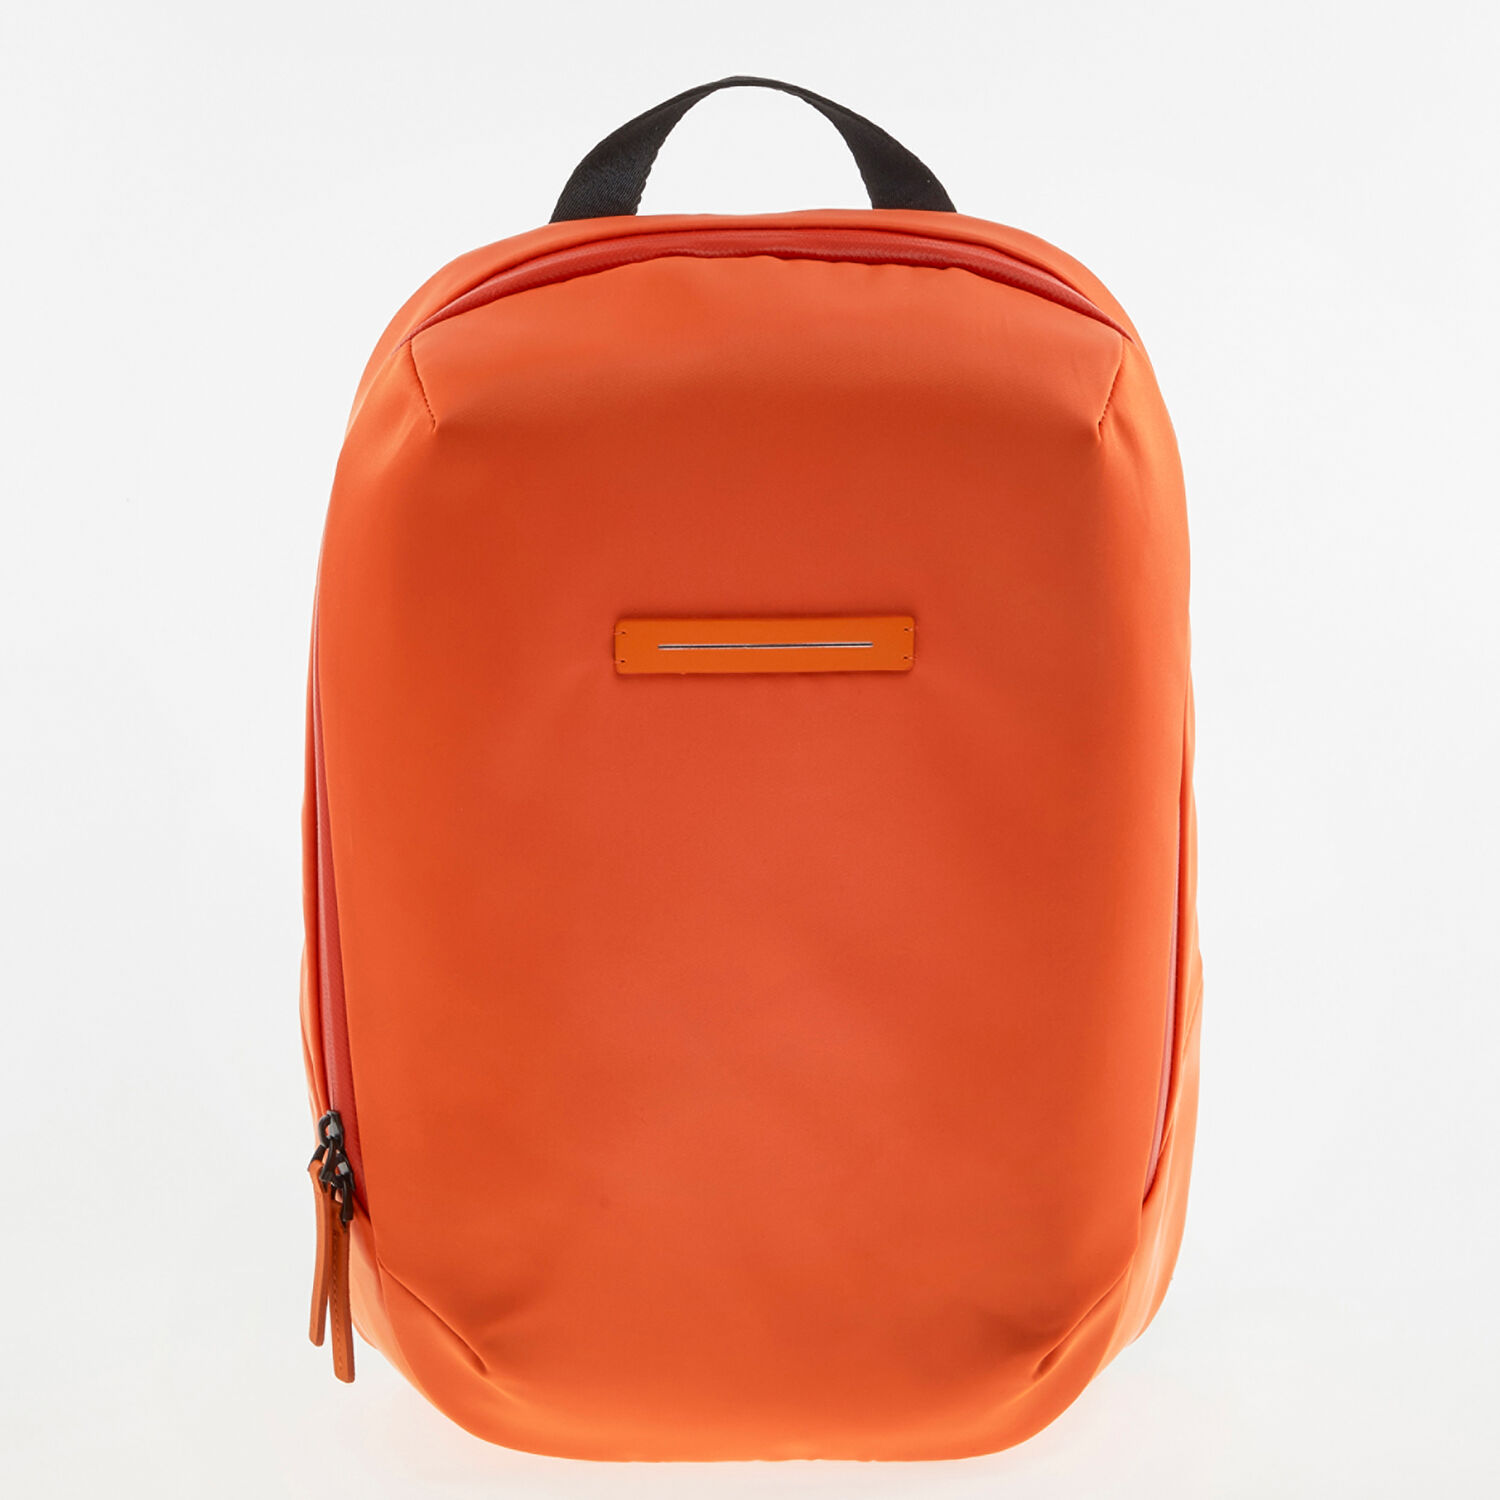 Оранжевый рюкзак с матовым покрытием Horizn Studios